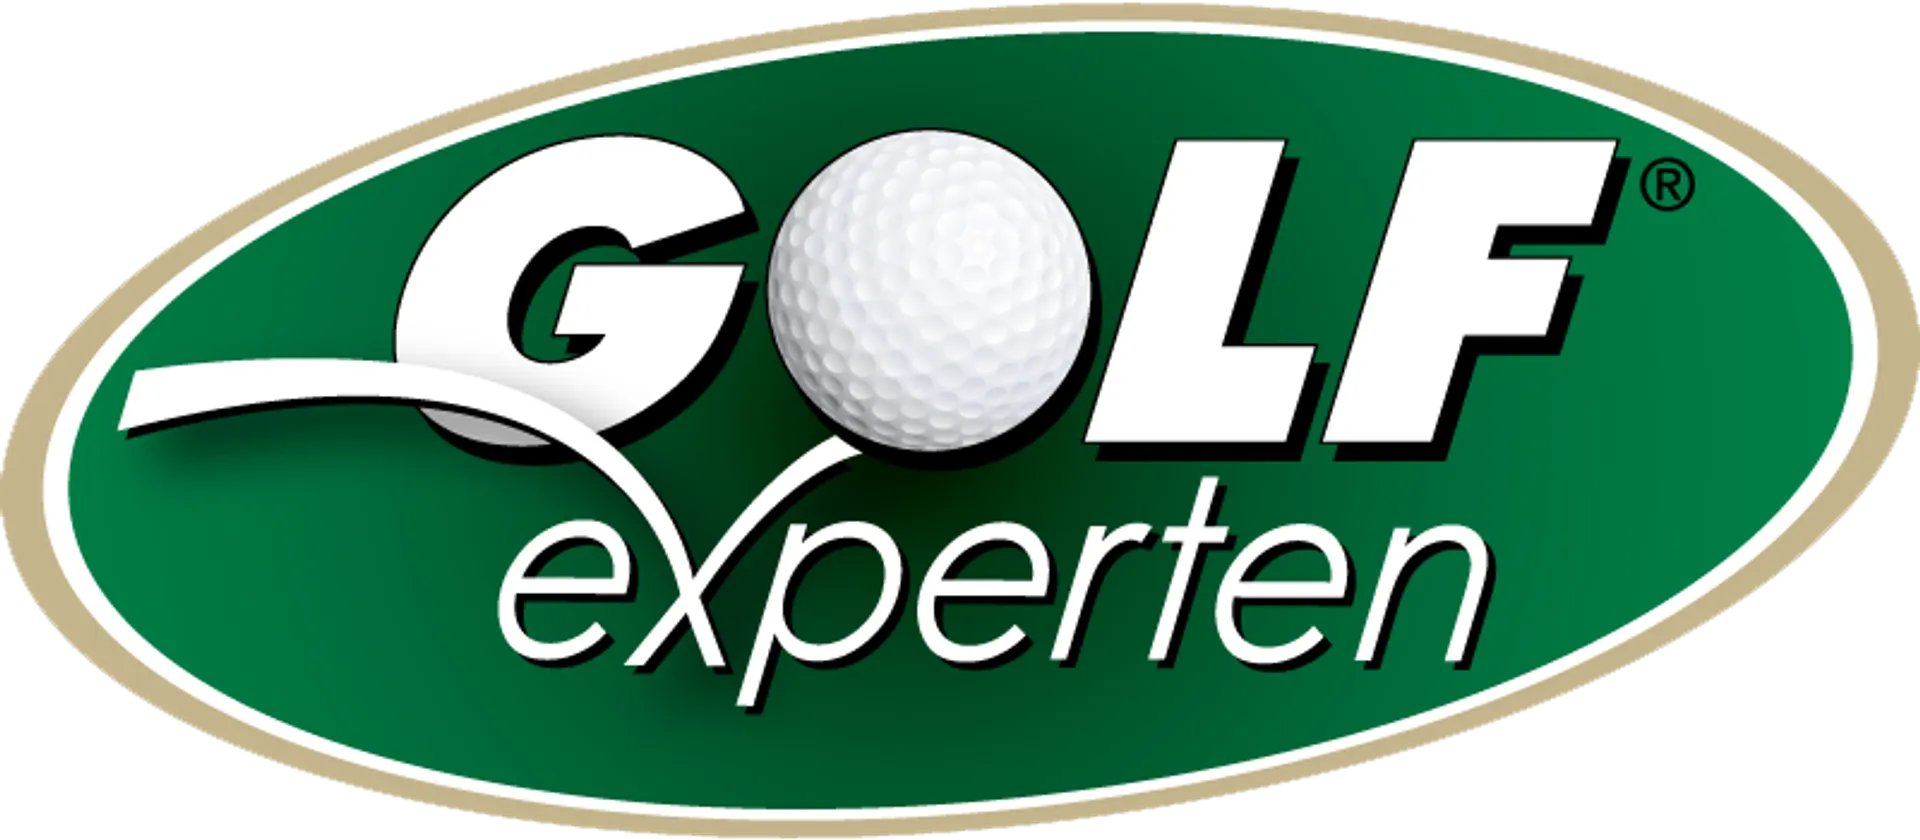 GOLF EXPERTEN logo